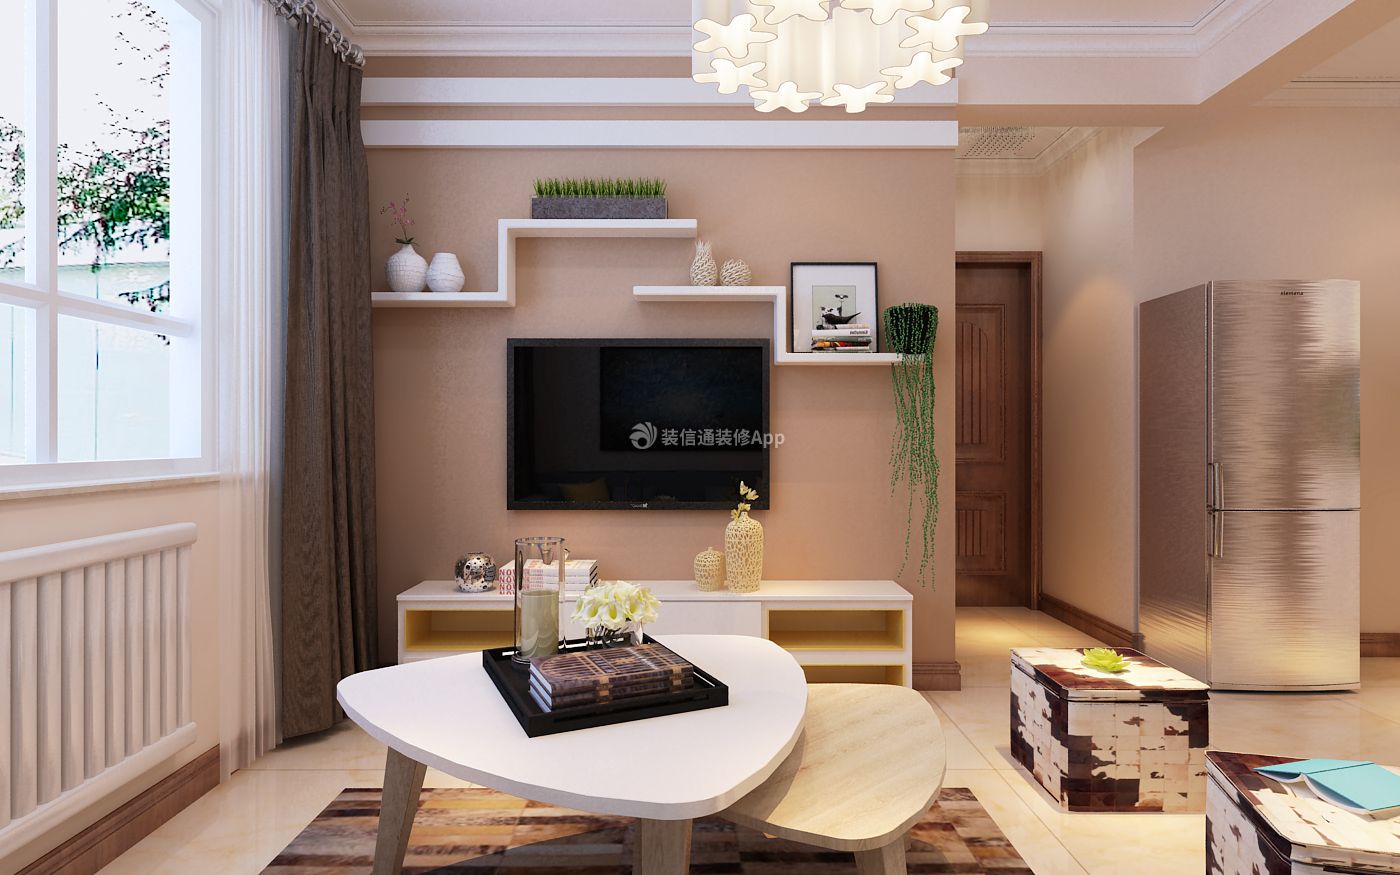 二居室62平小户型客厅现代风格家装图片赏析